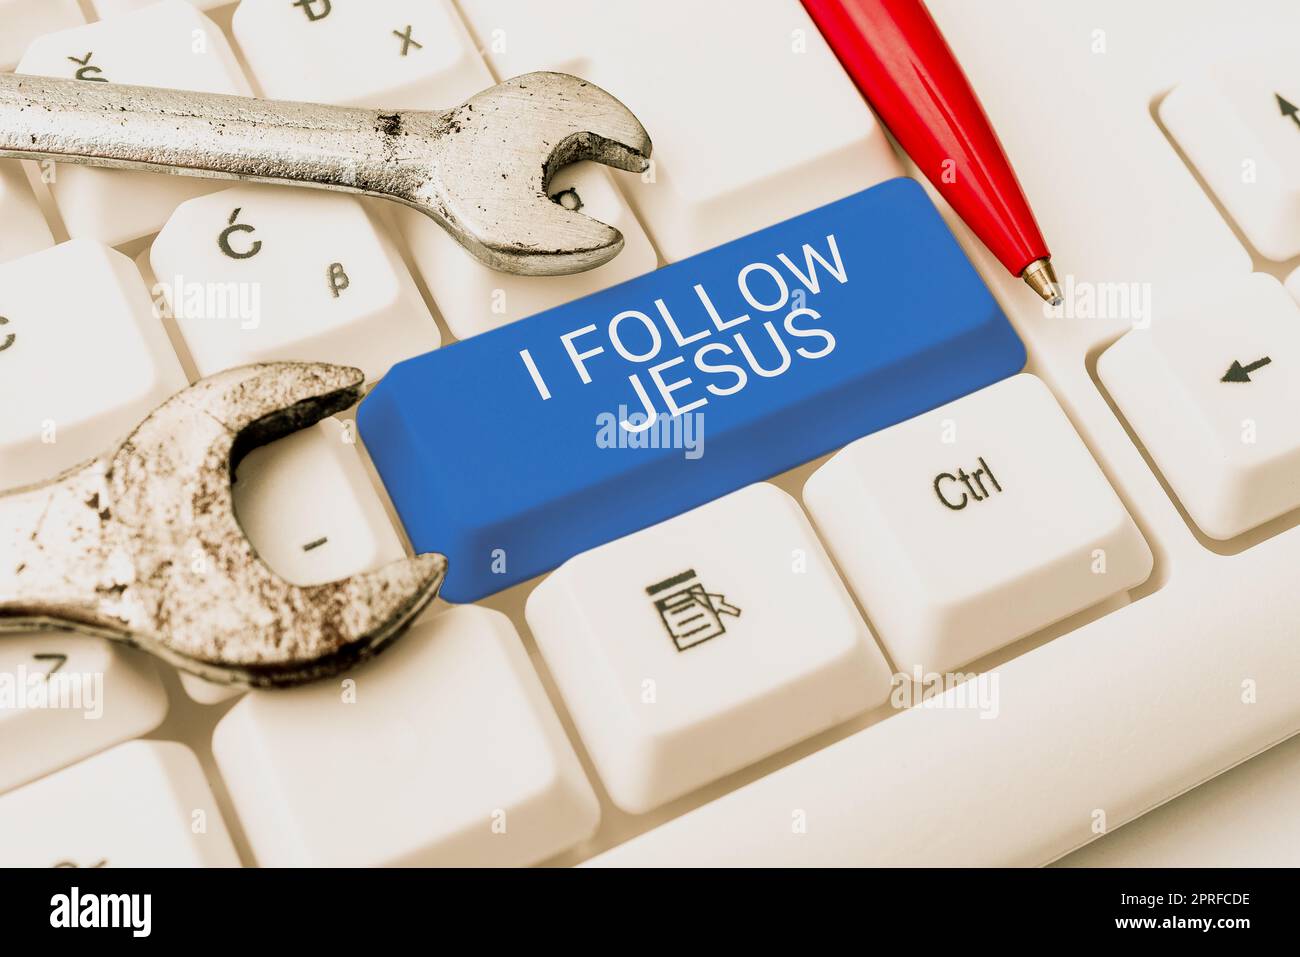 Cartello che mostra che seguo Gesù. Concetto di business persona religiosa con molta fede amore per Dio Spiritualità Foto Stock